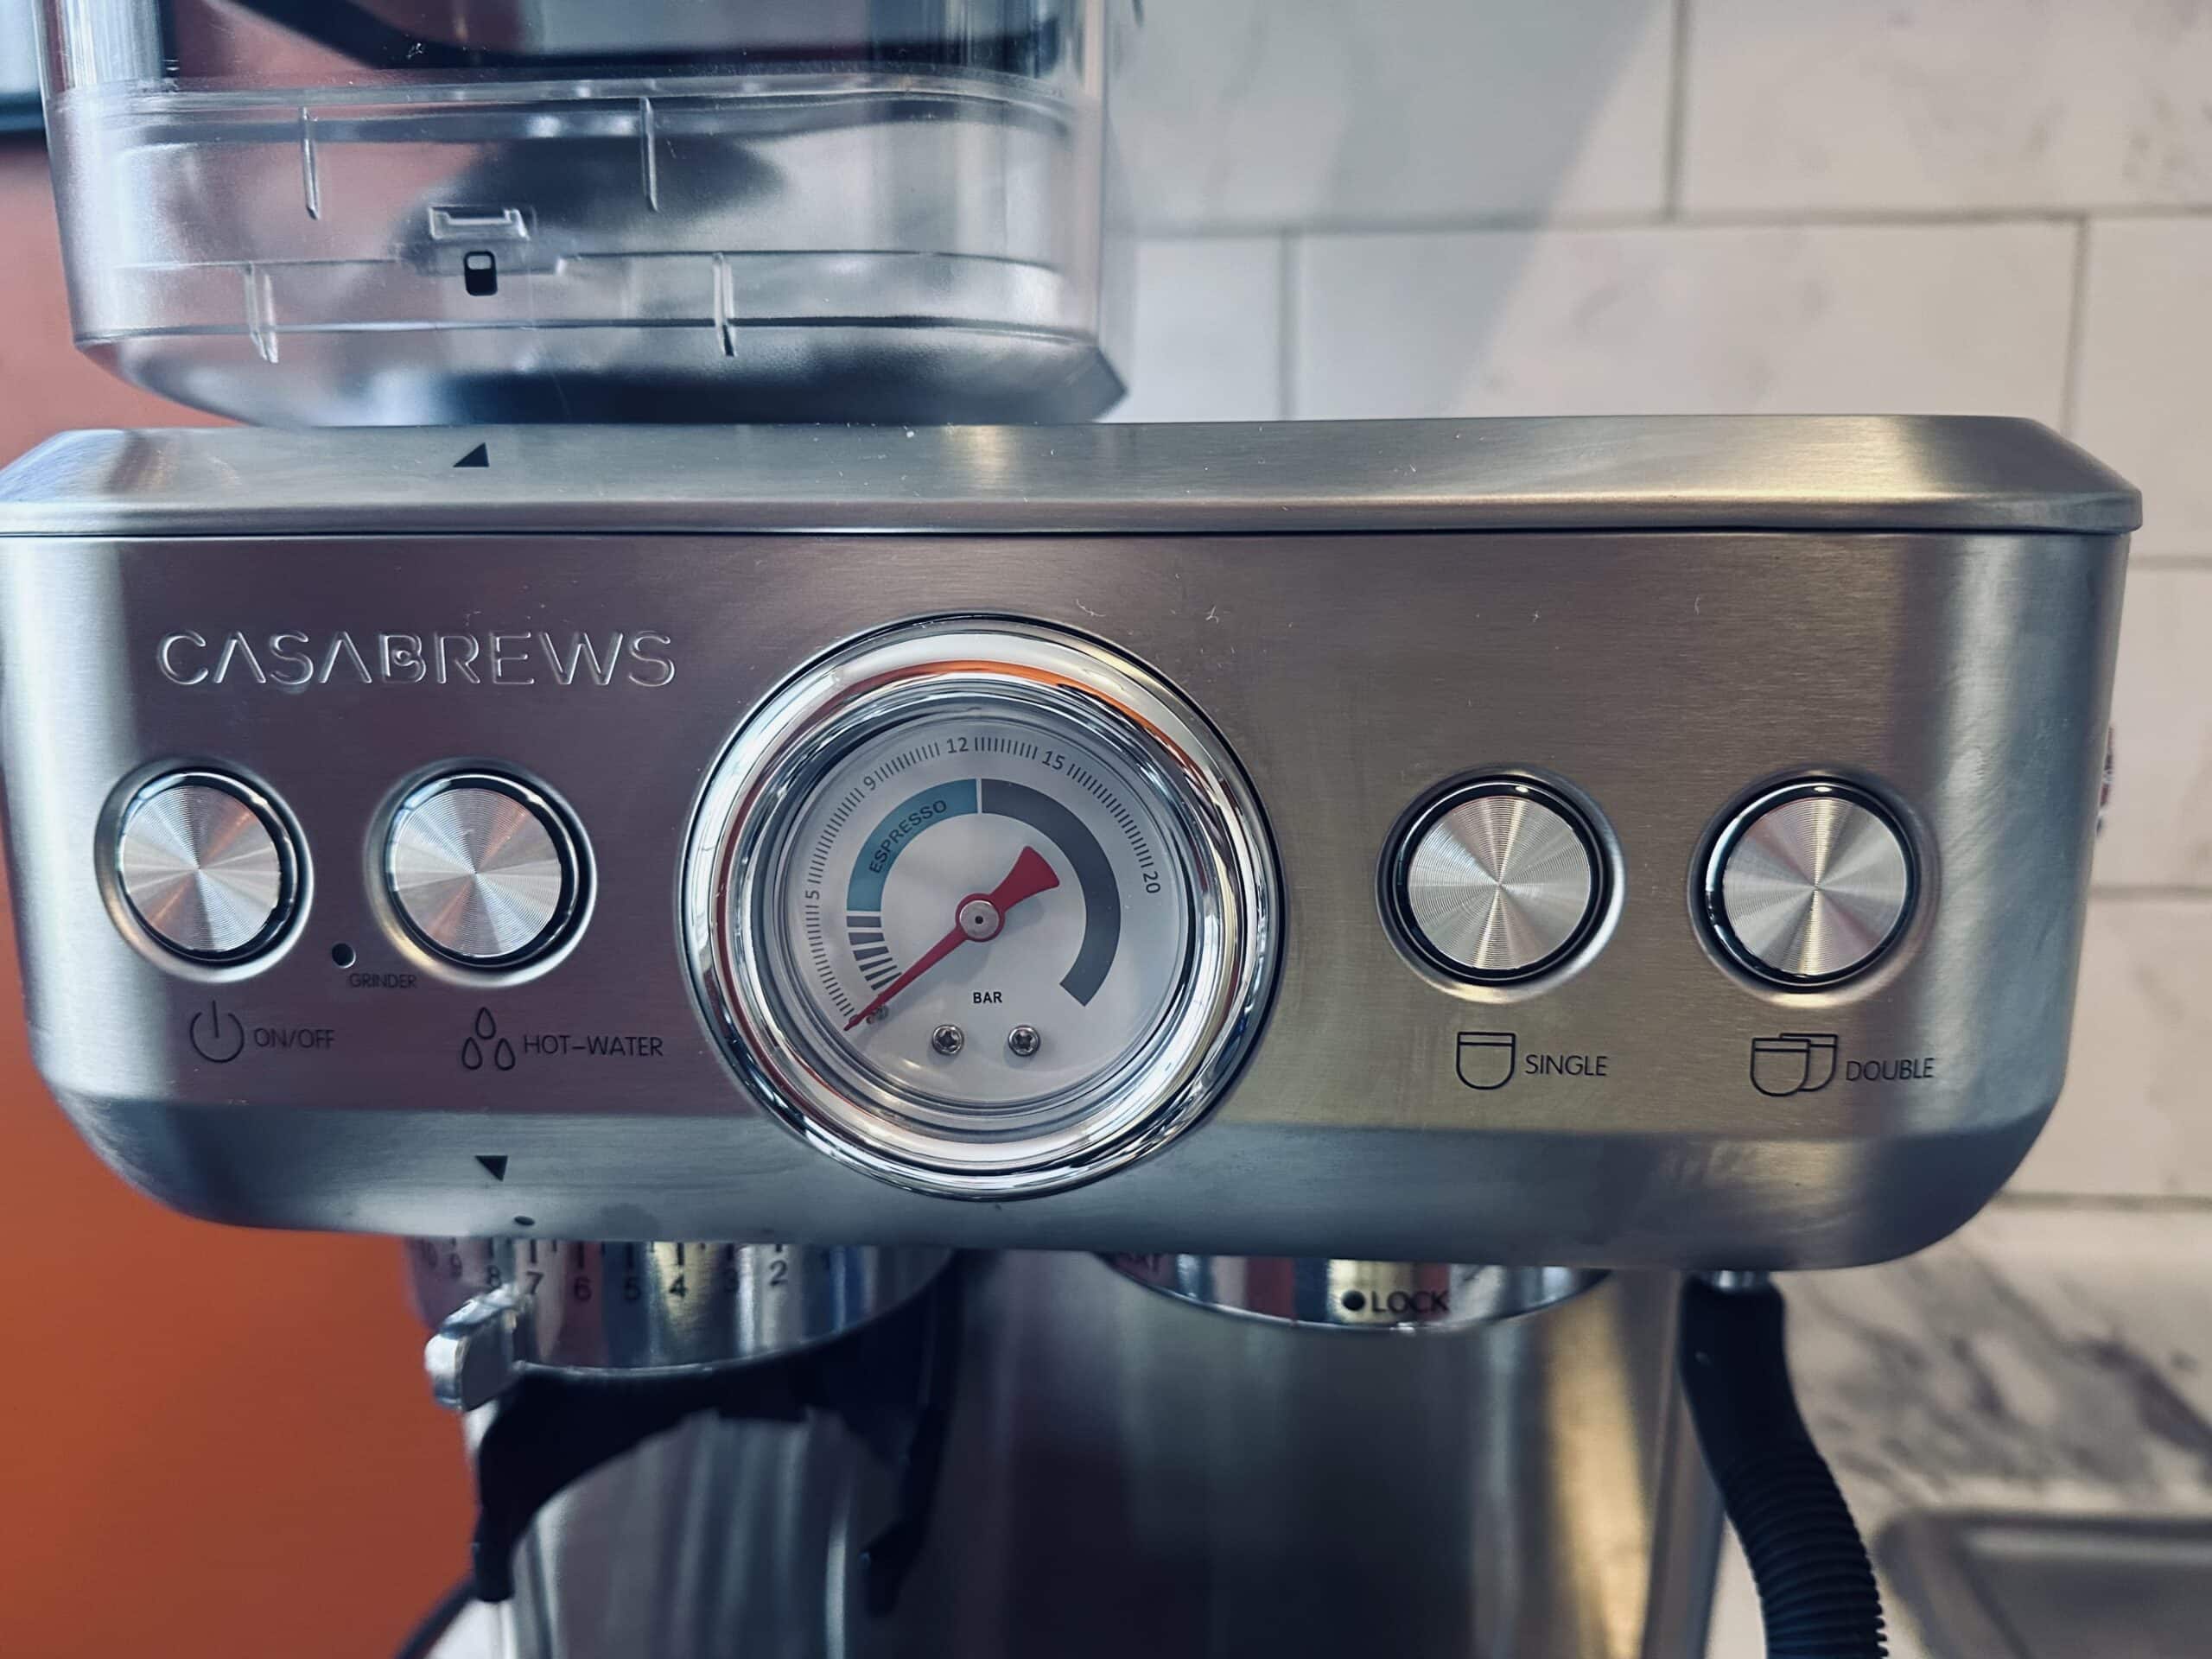 Casabrews Espresso Machine buttons close up